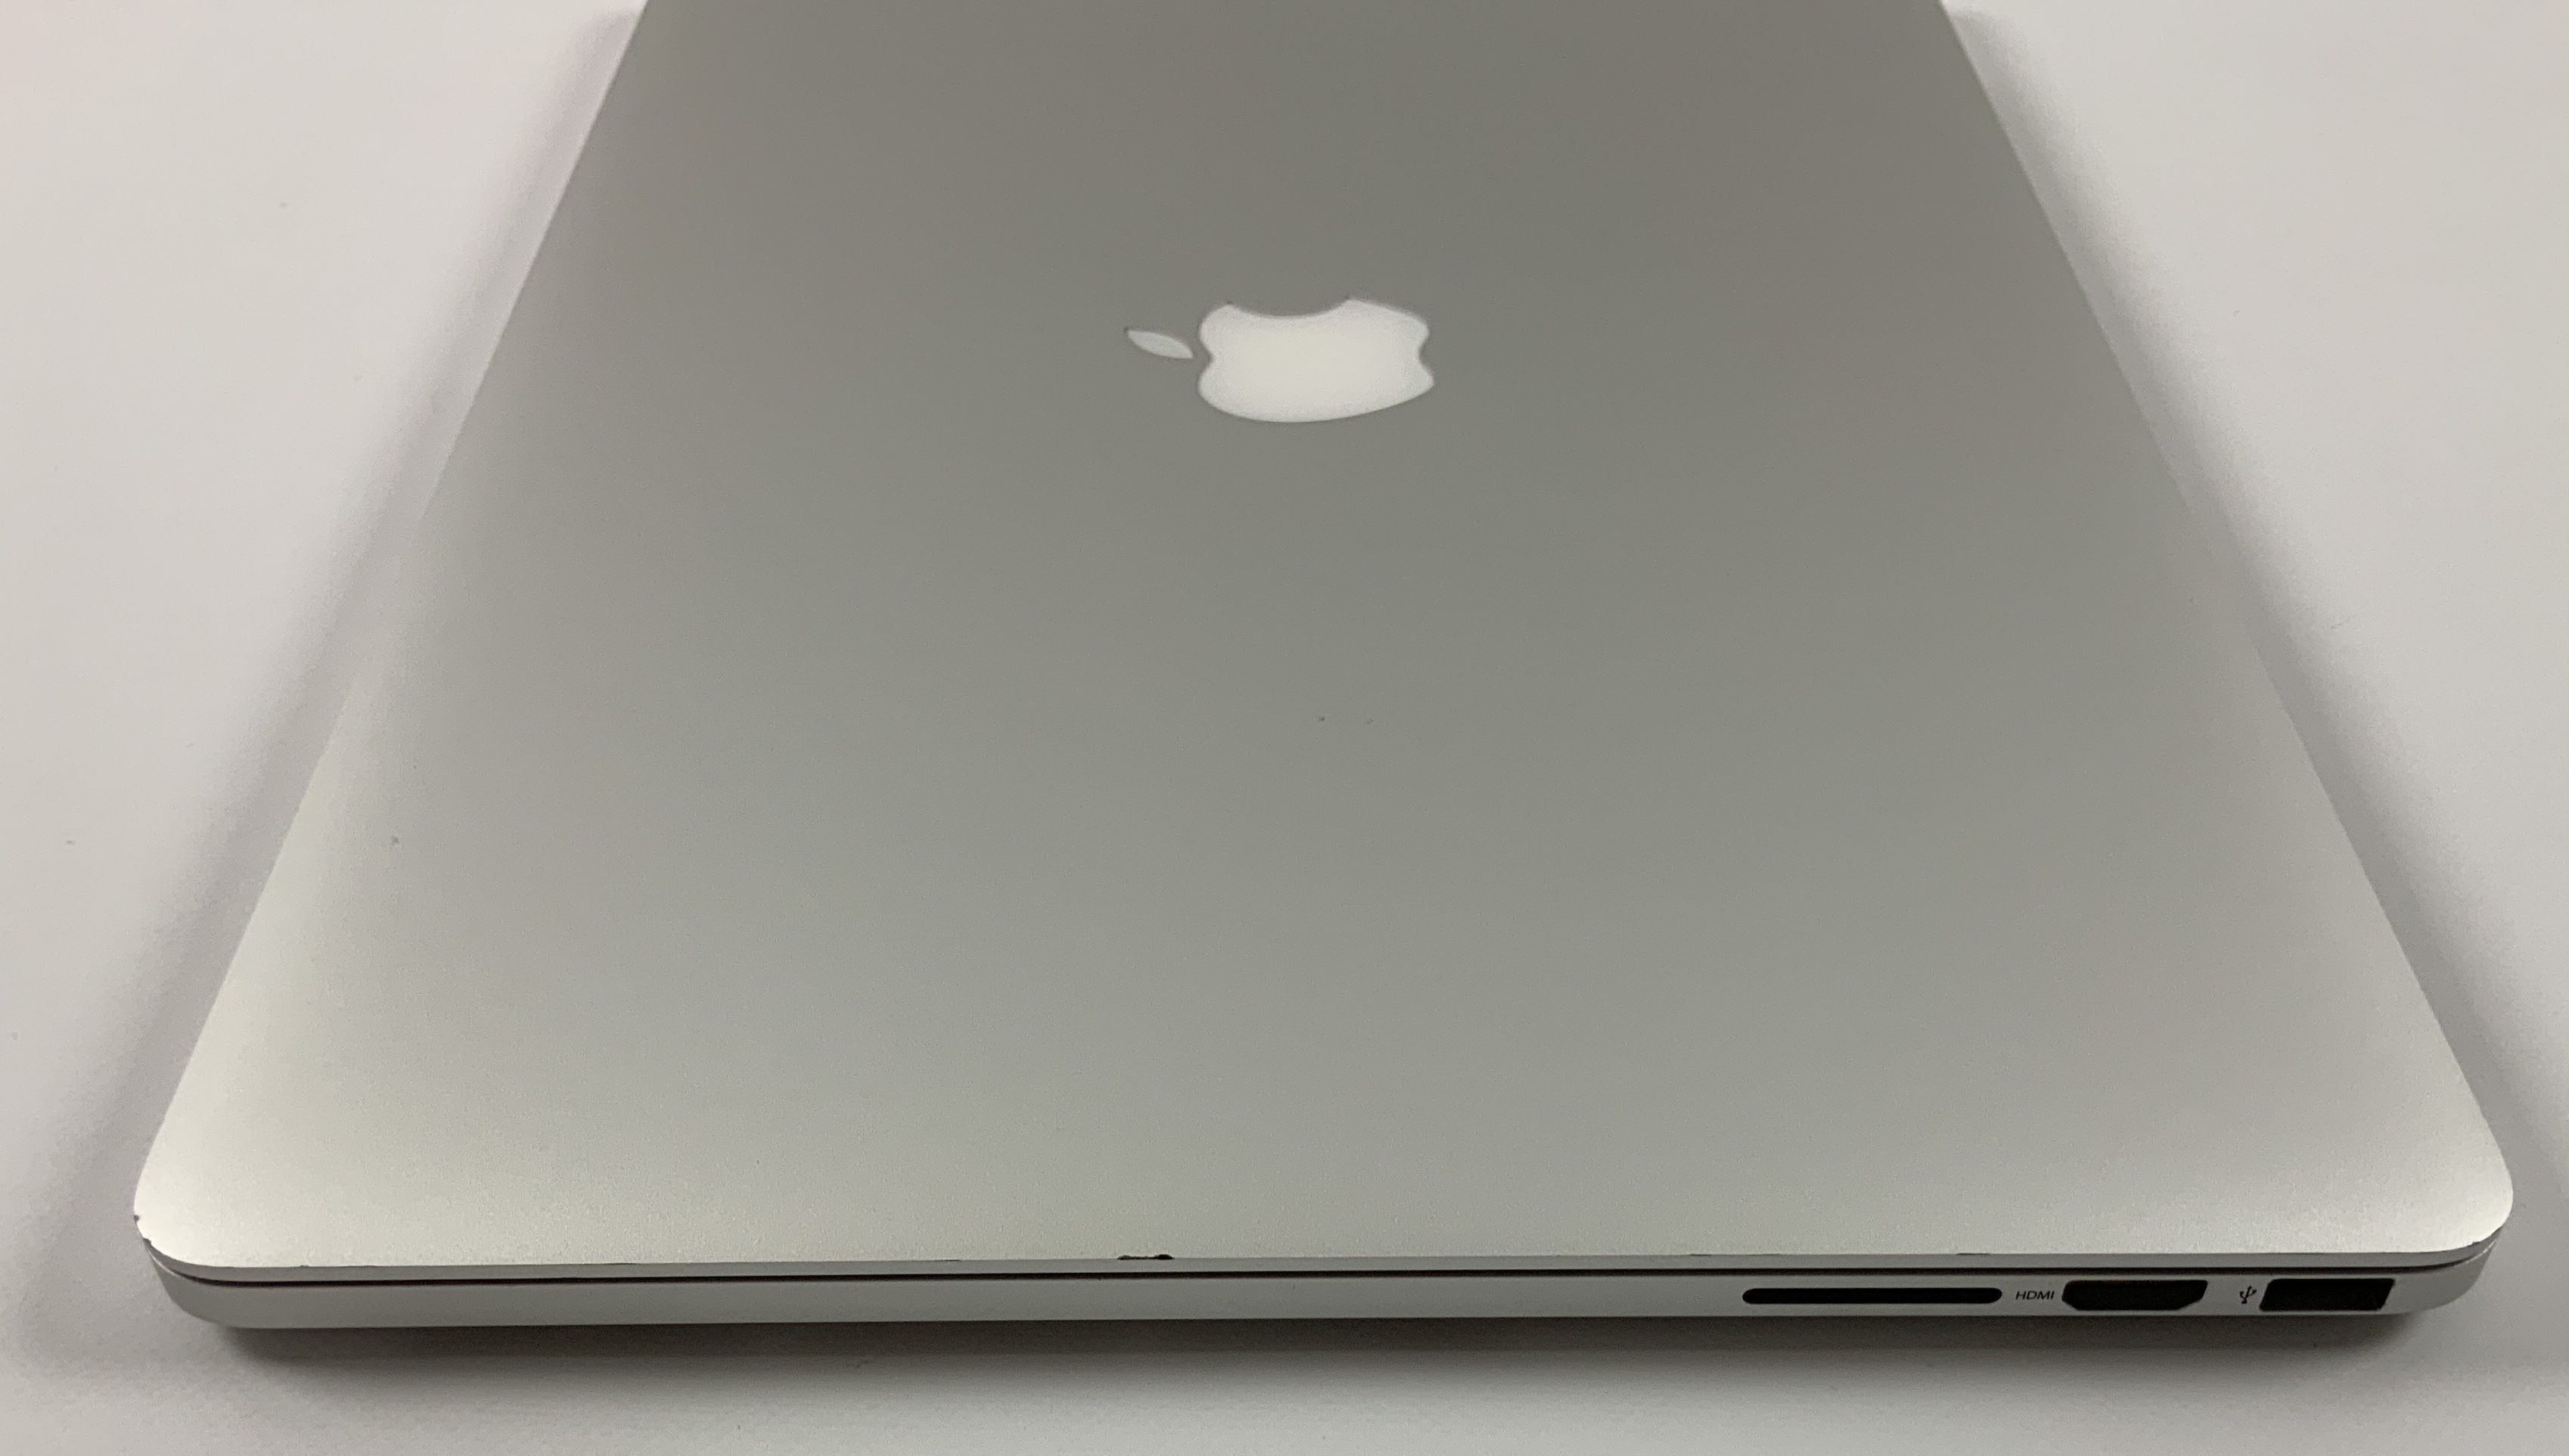 MacBook Pro Retina 15" Mid 2015 (Intel Quad-Core i7 2.2 GHz 16 GB RAM 256 GB SSD), Intel Quad-Core i7 2.2 GHz, 16 GB RAM, 256 GB SSD, Afbeelding 3